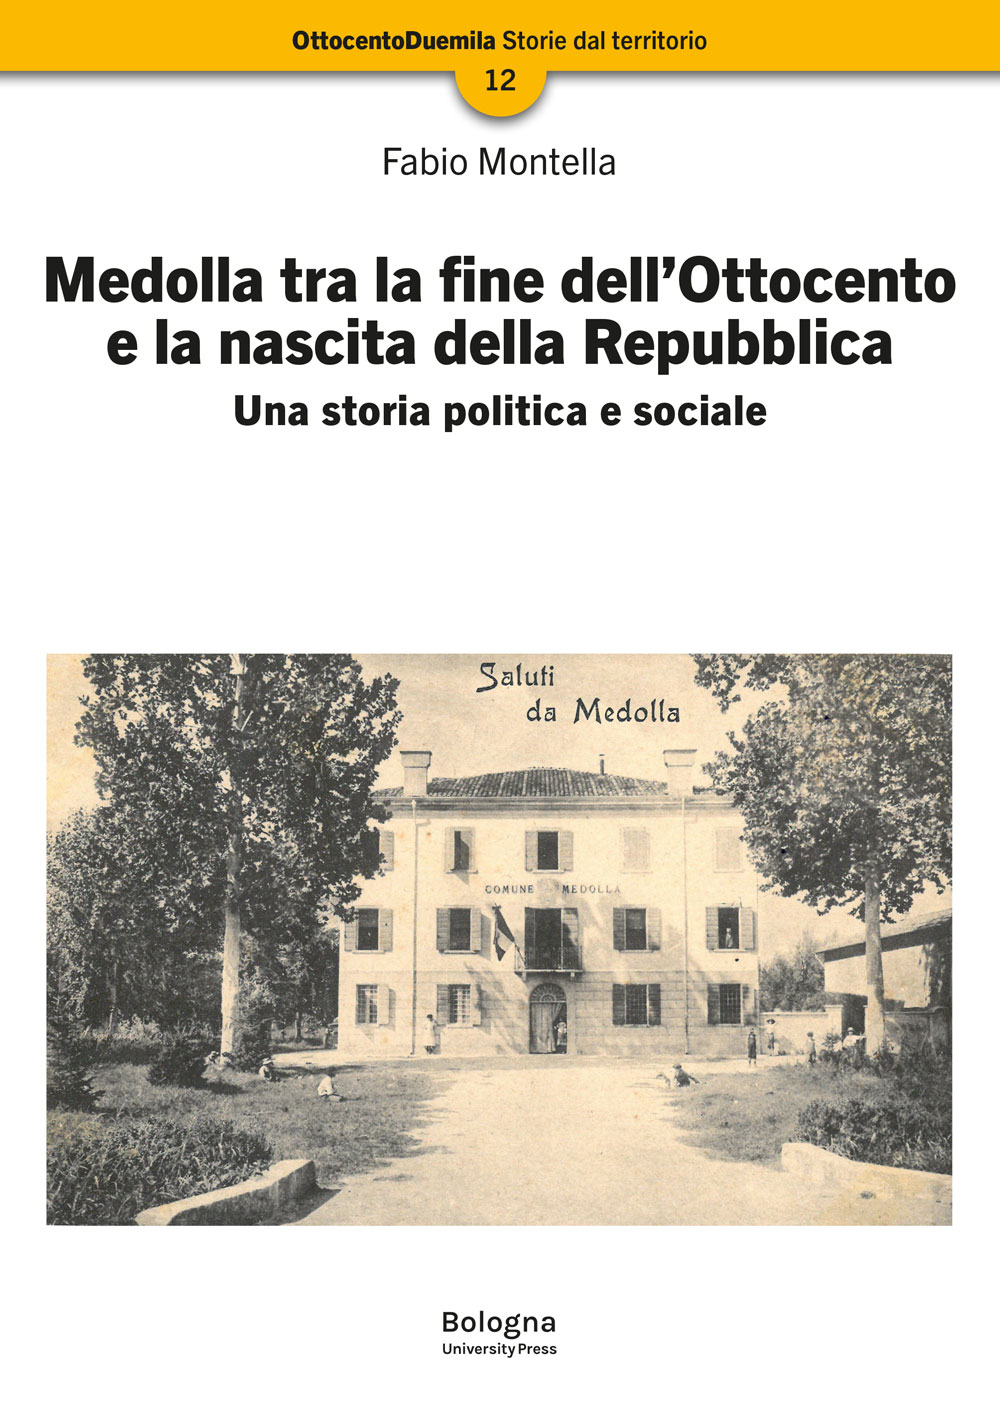 Medolla tra la fine dell’Ottocento e la nascita della Repubblica - Bologna University Press